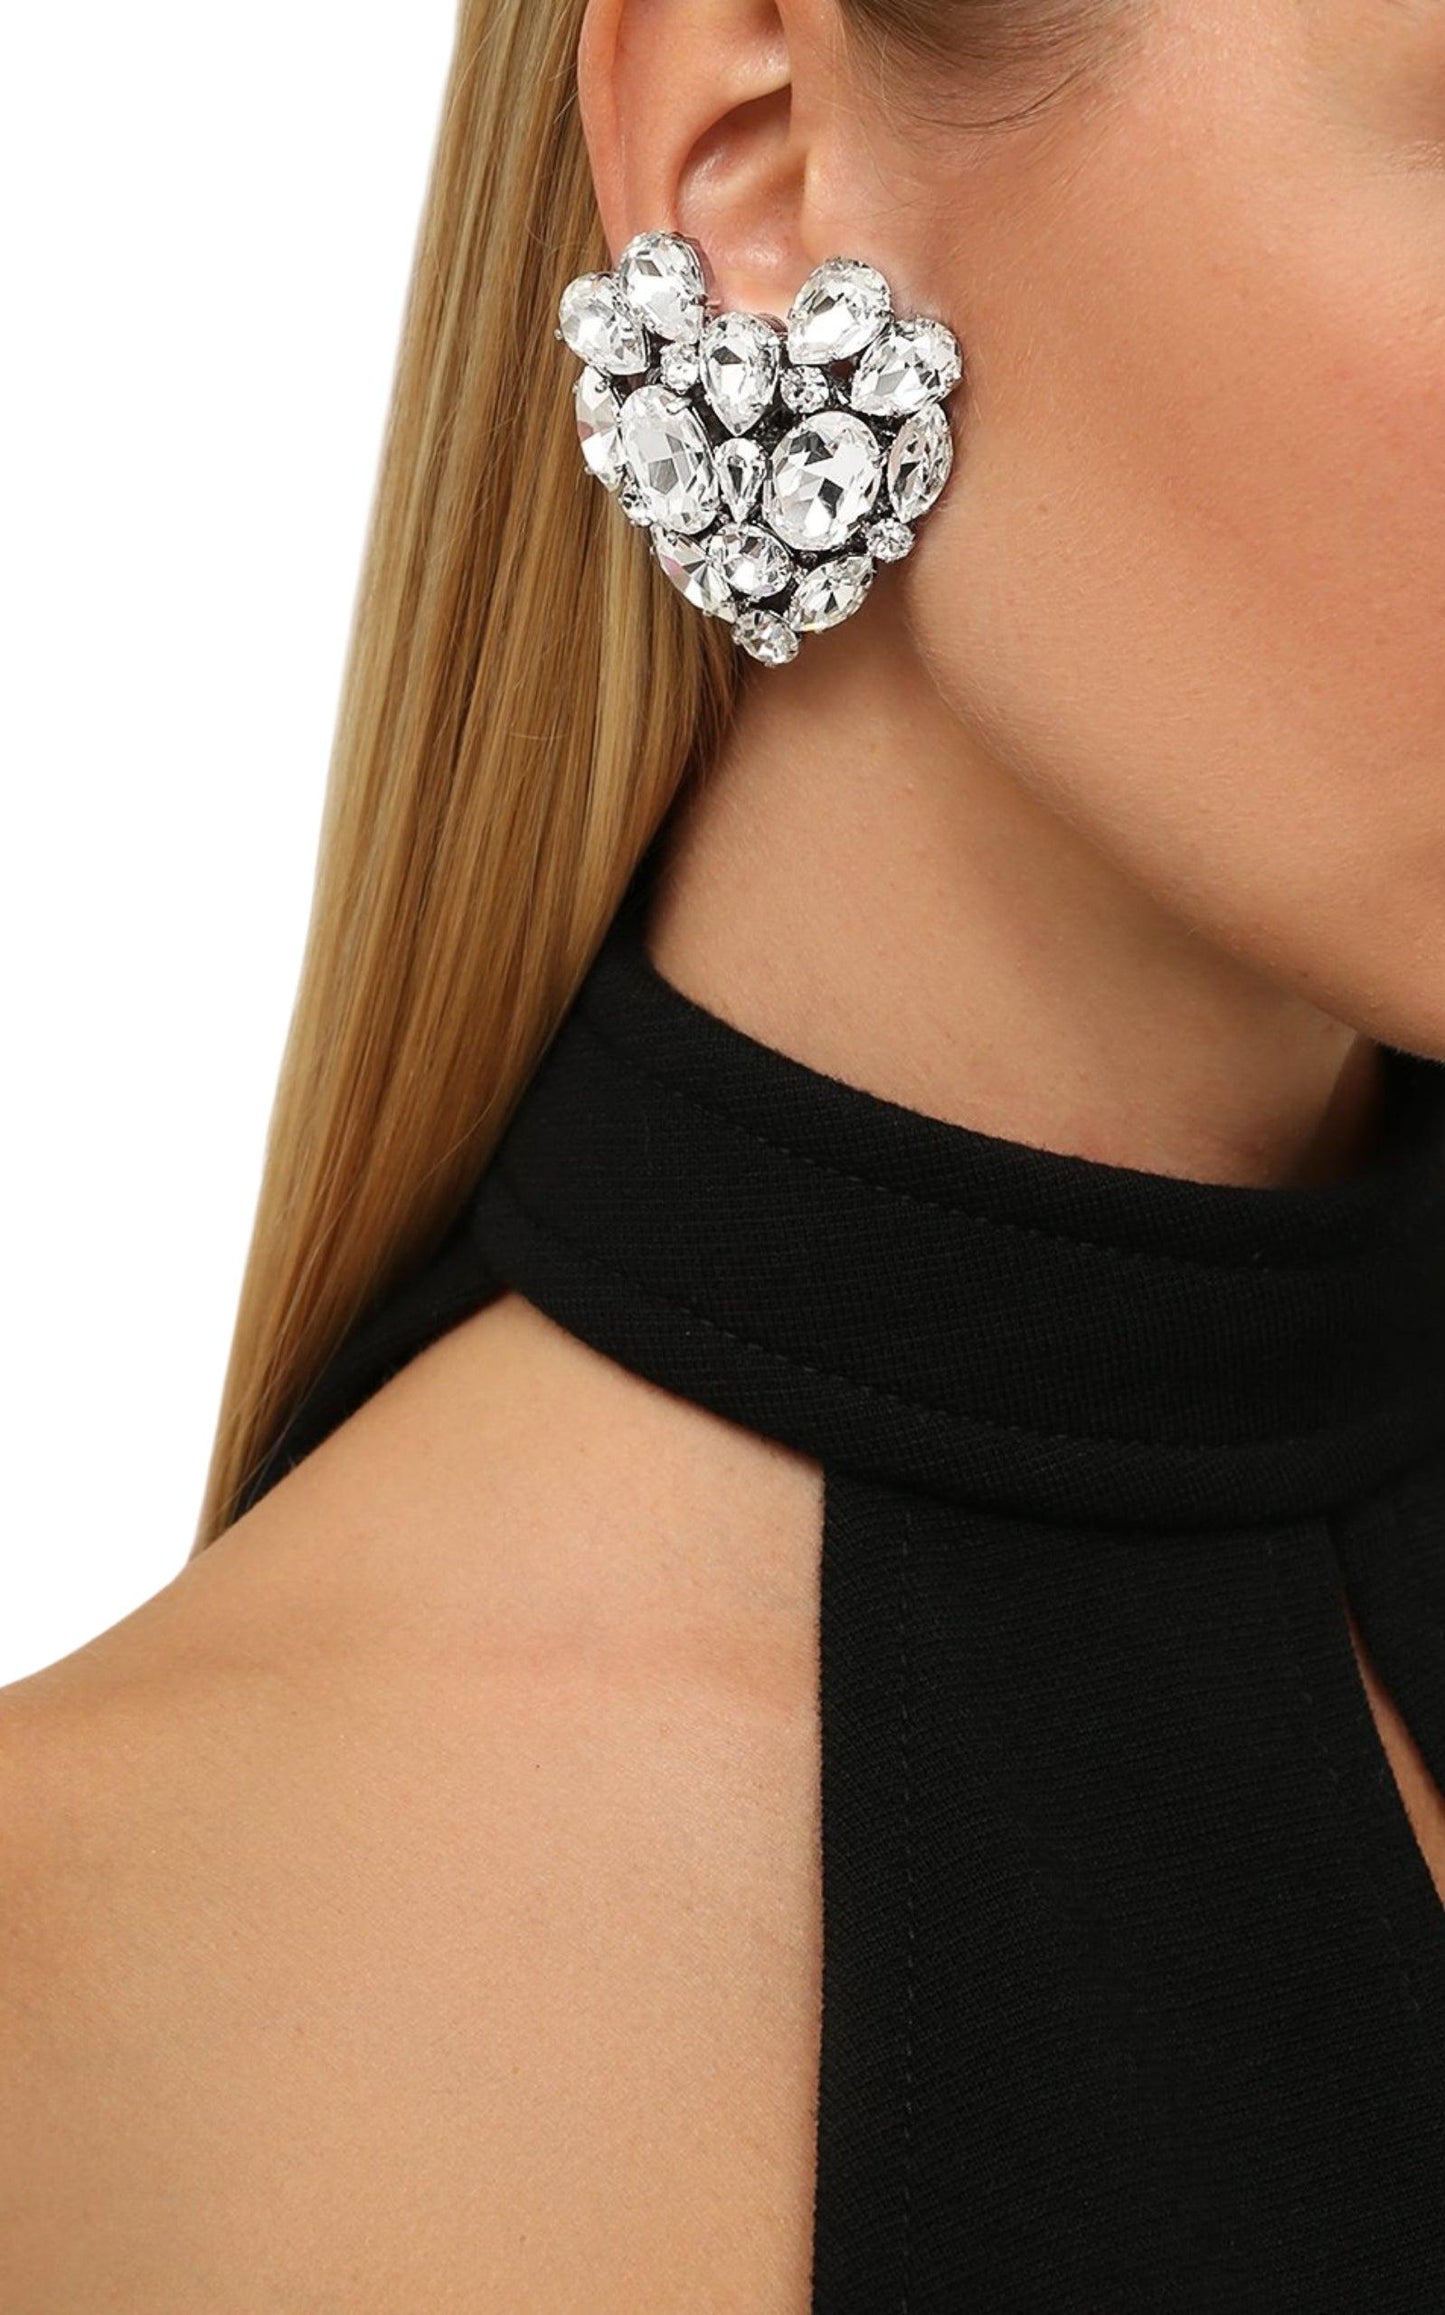 Silvertone Crystal Heart Stud Clip-On Earrings